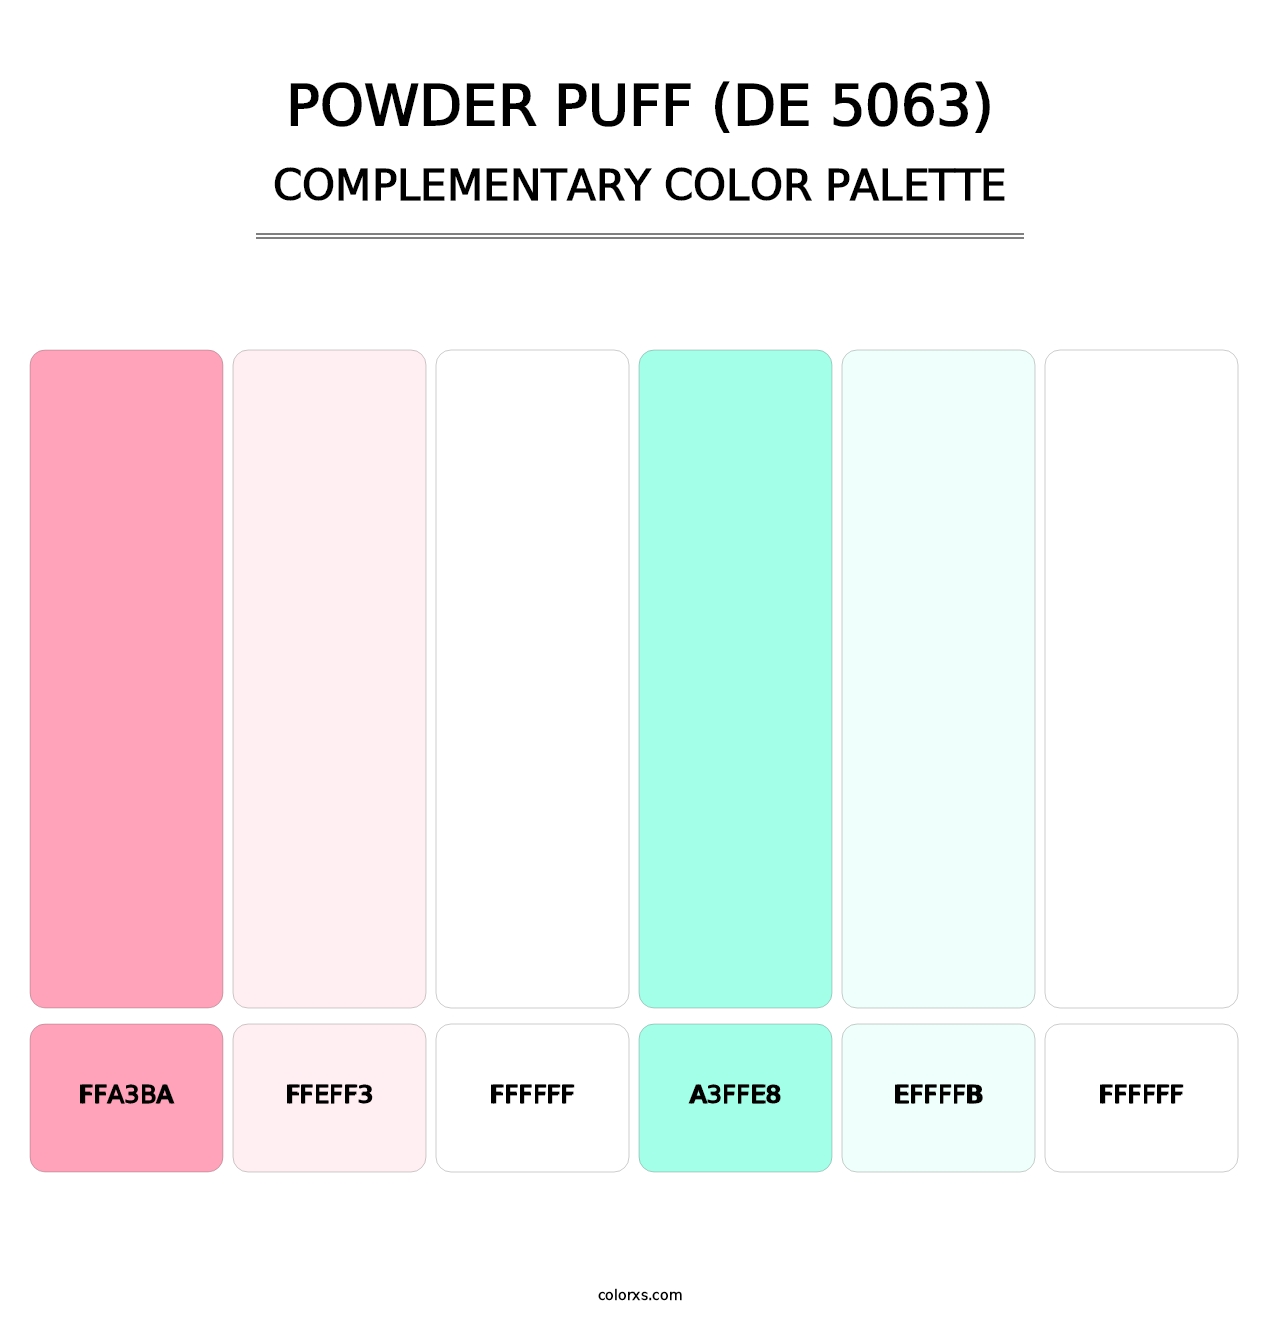 Powder Puff (DE 5063) - Complementary Color Palette